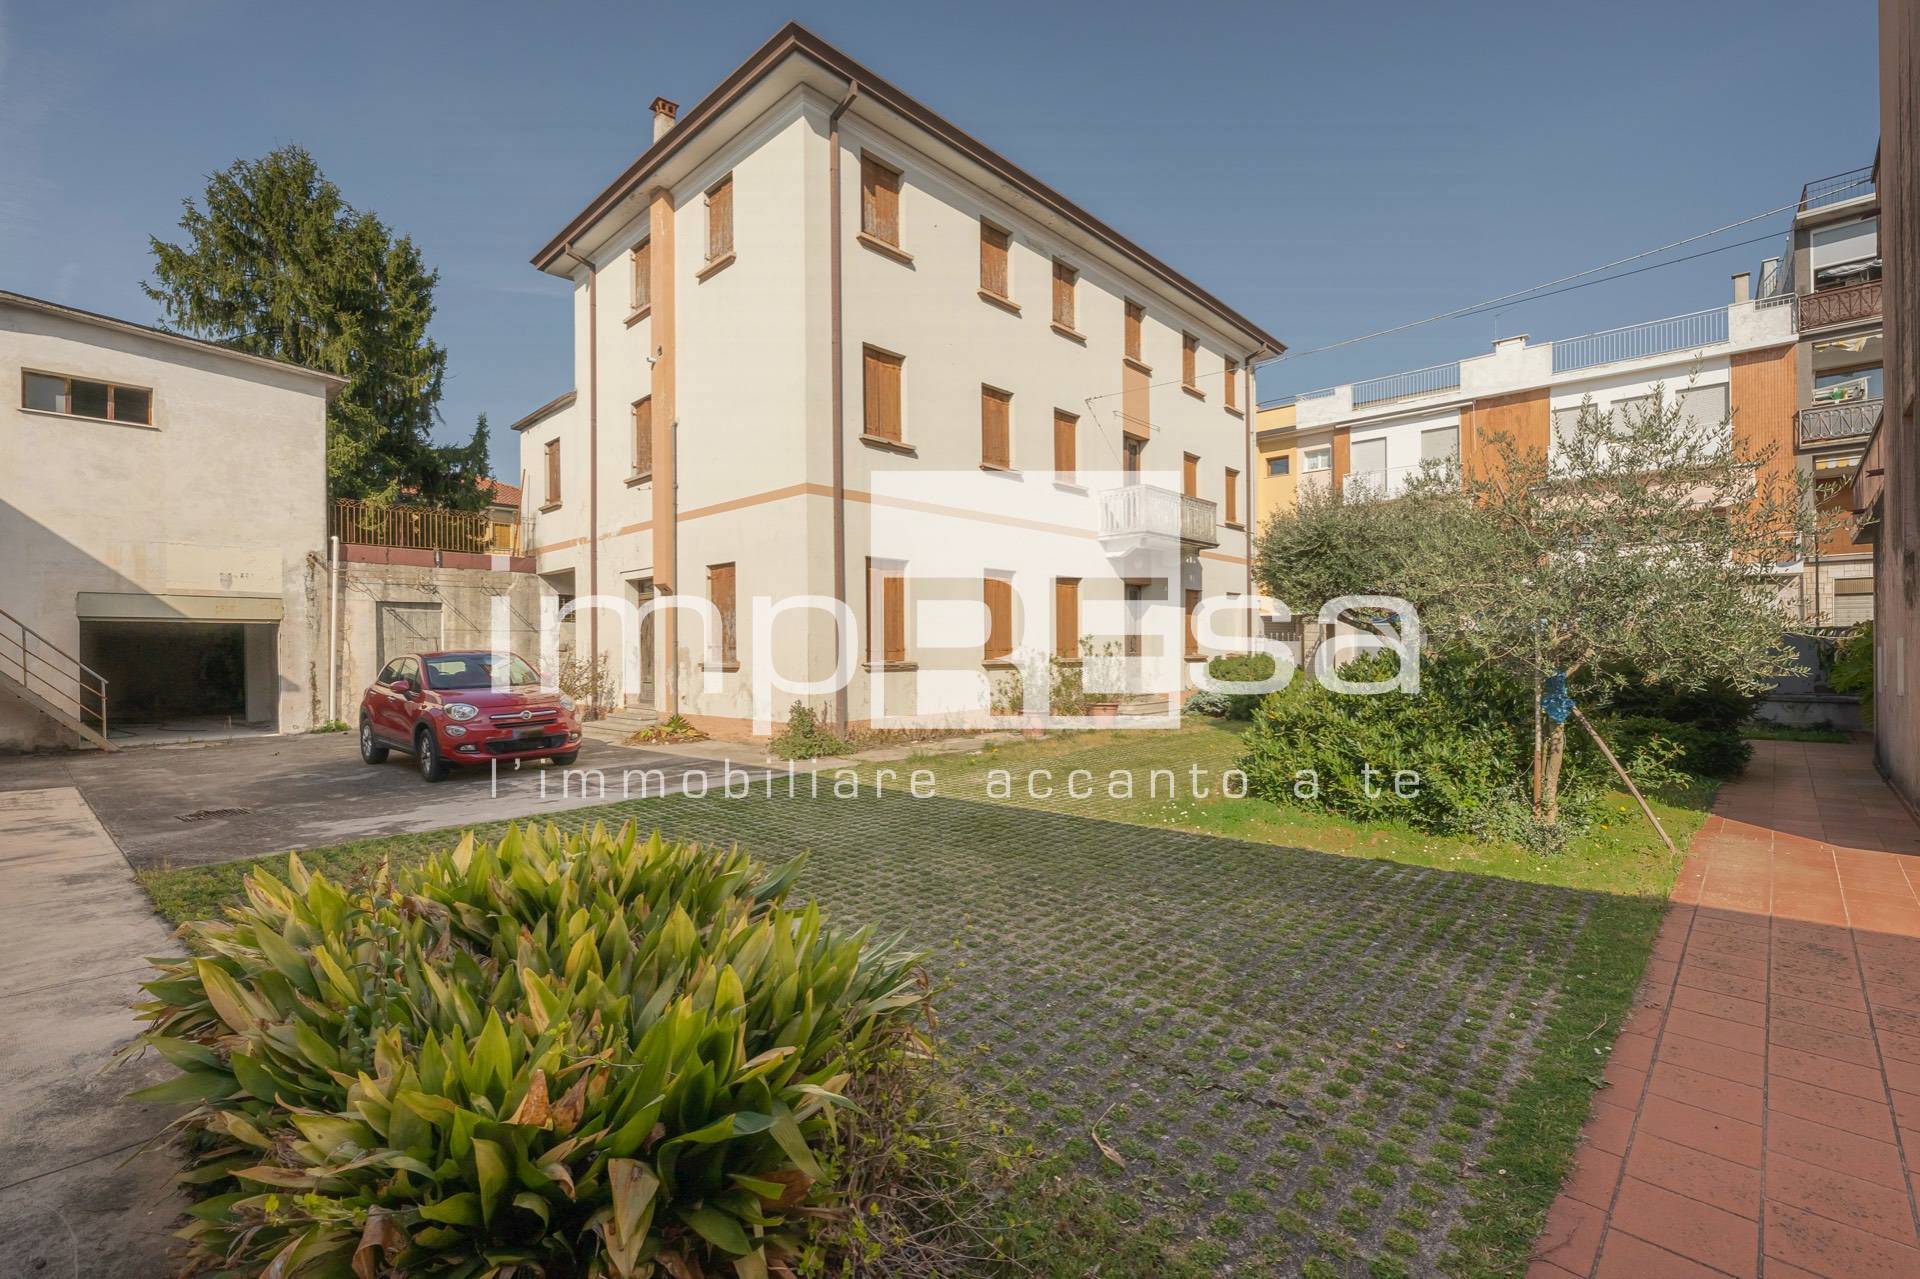 Villa in vendita a Annone Veneto, 10 locali, prezzo € 400.000 | PortaleAgenzieImmobiliari.it